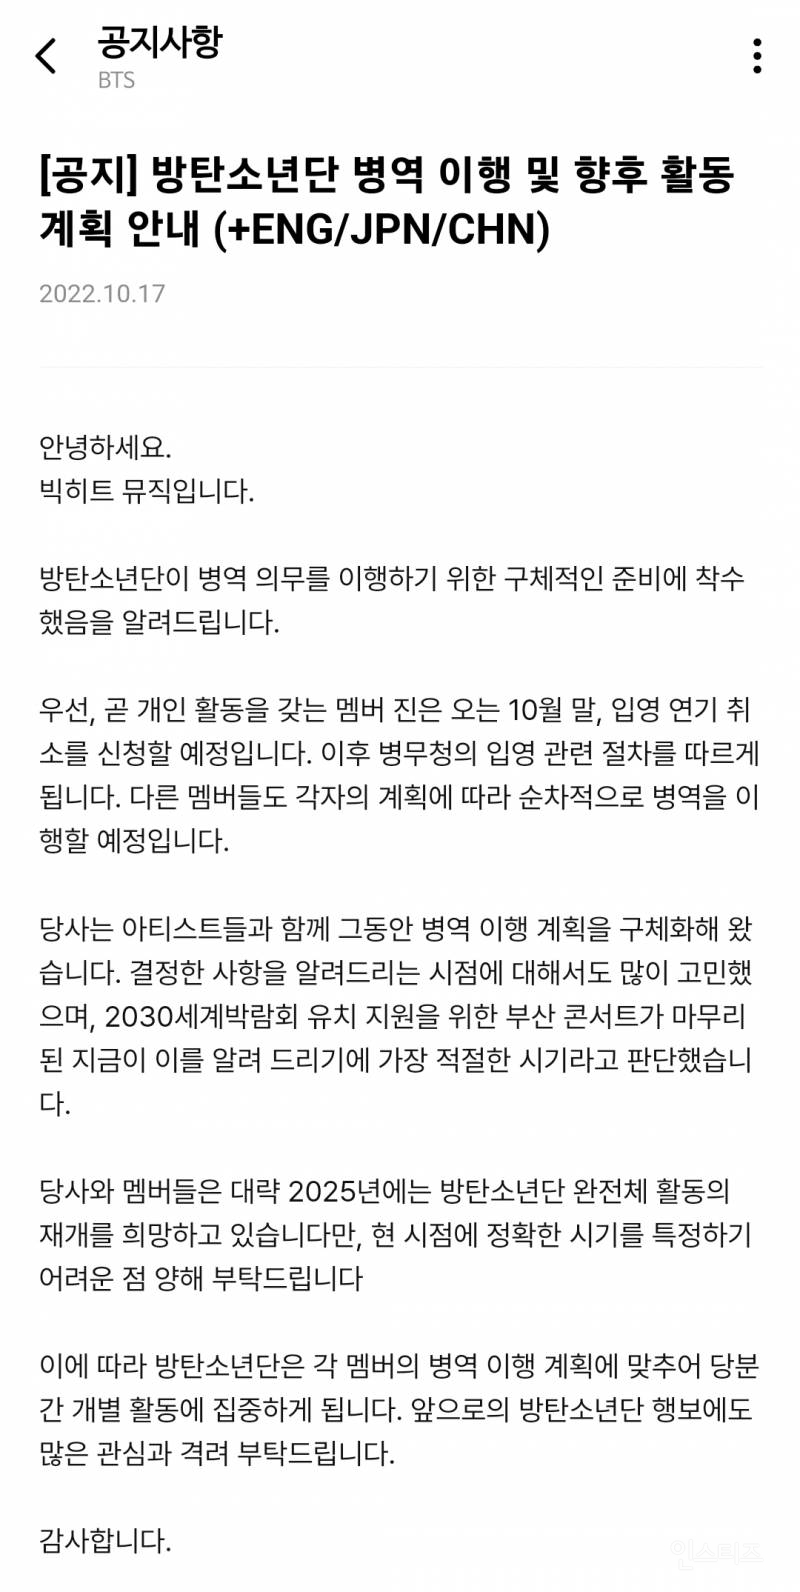 BTS 방탄소년단 입영 연기 취소, 멤버 진부터 순차 병역이행예정 | 인스티즈